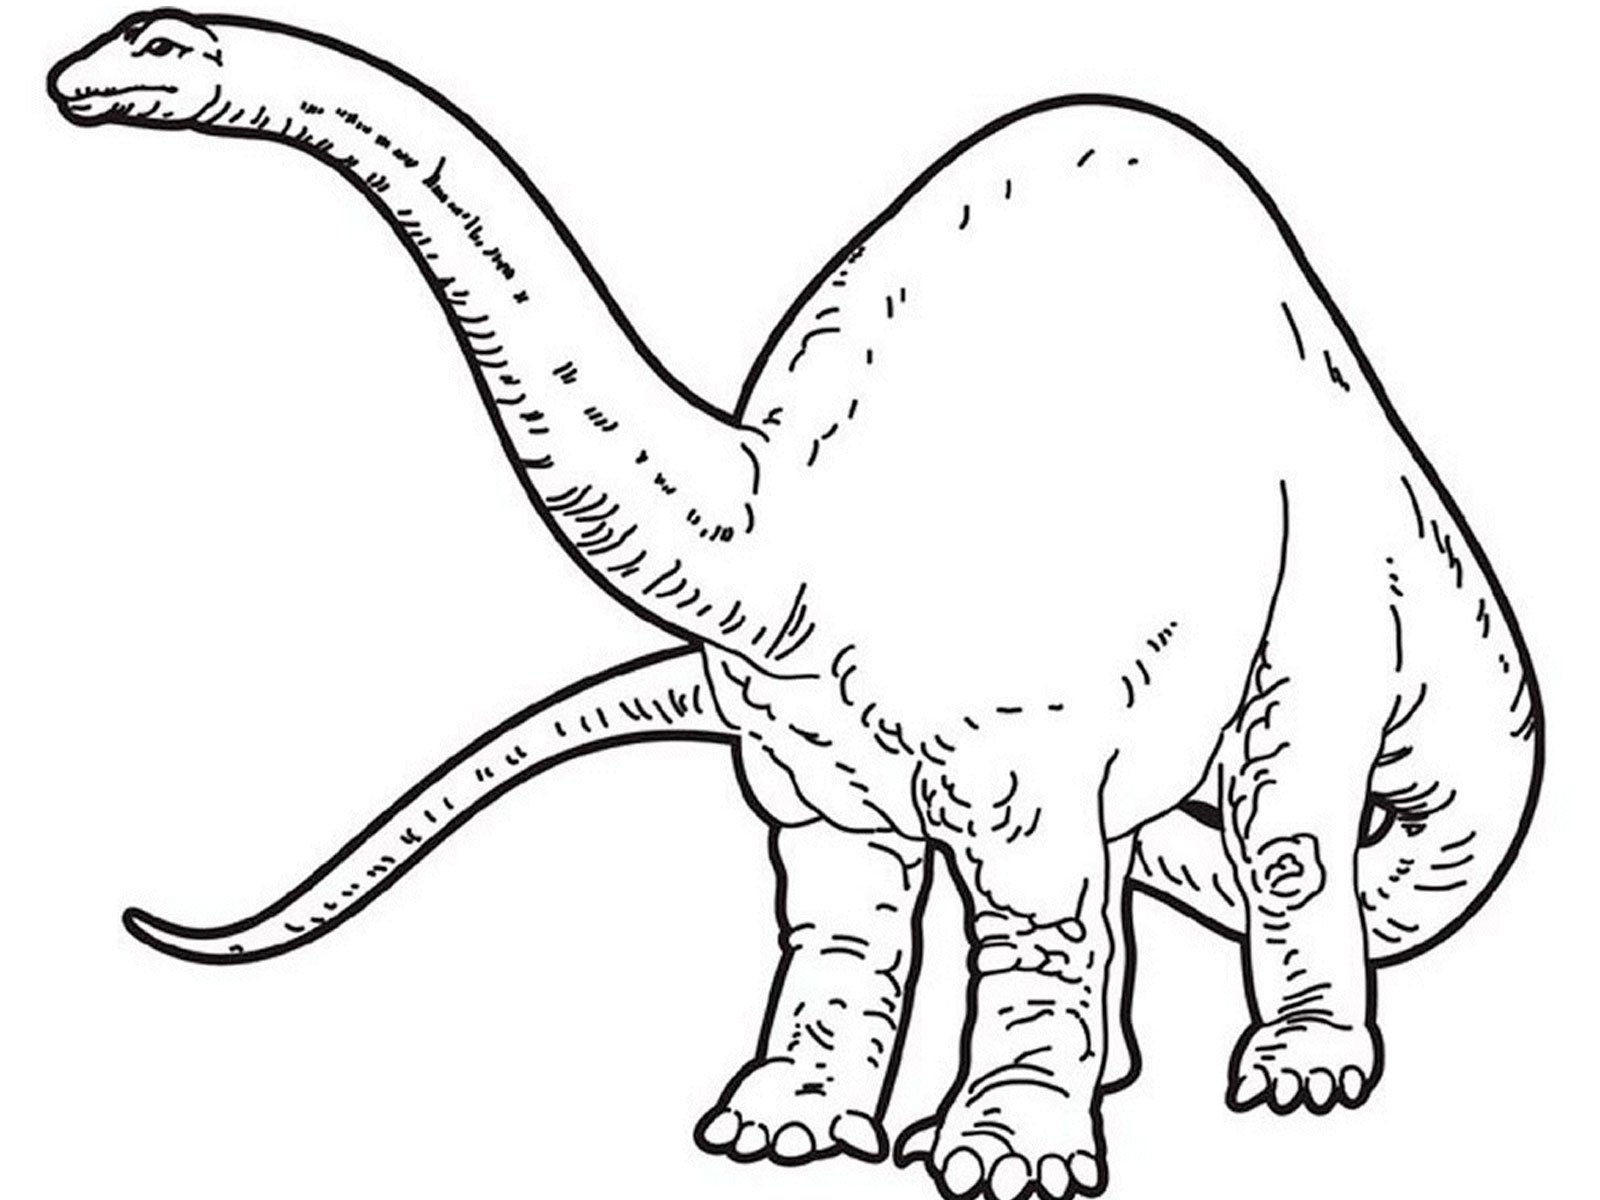 Динозавры для раскрашивания. Раскраска динозавр Диплодок. Раскраска динозавр Брахиозавр. Динозавр брон раскраска. Картинка динозавра для детей раскраска.